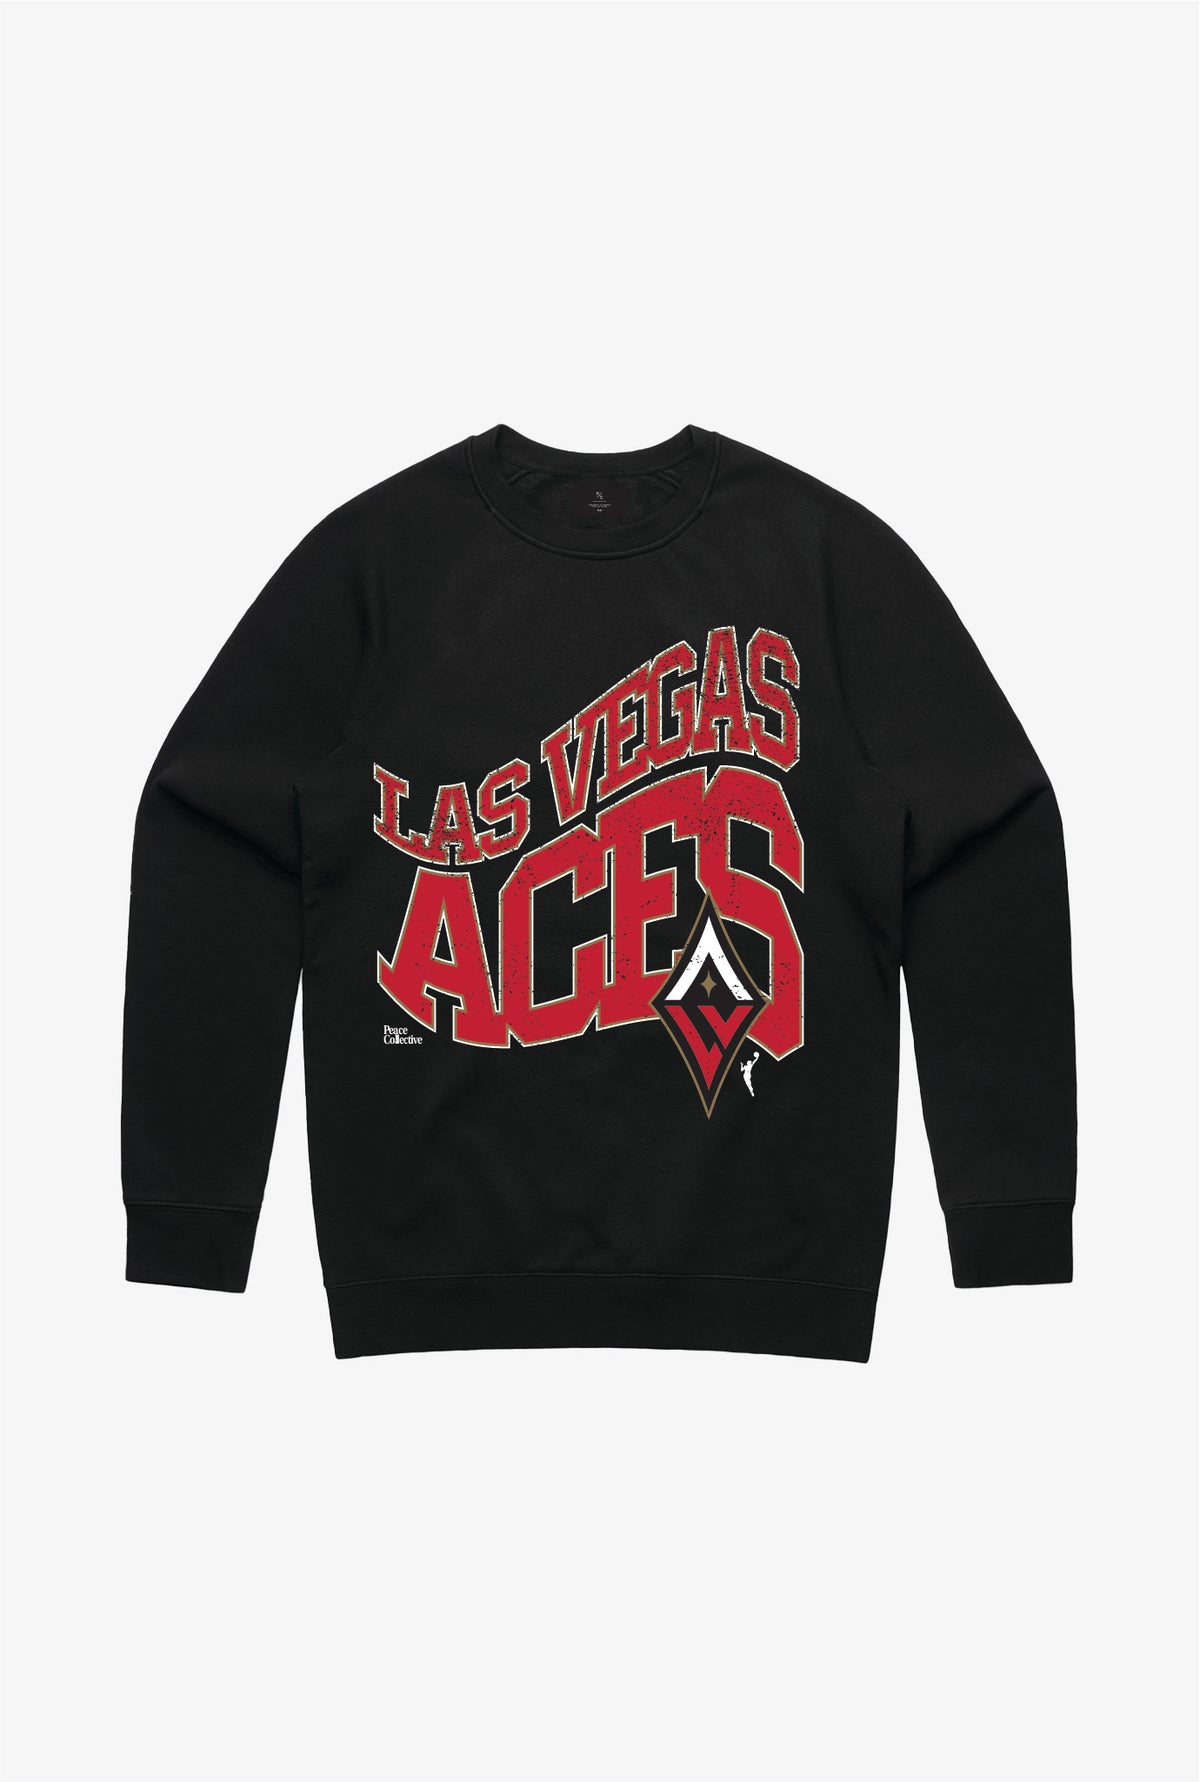 Las Vegas Aces Crewneck - Black